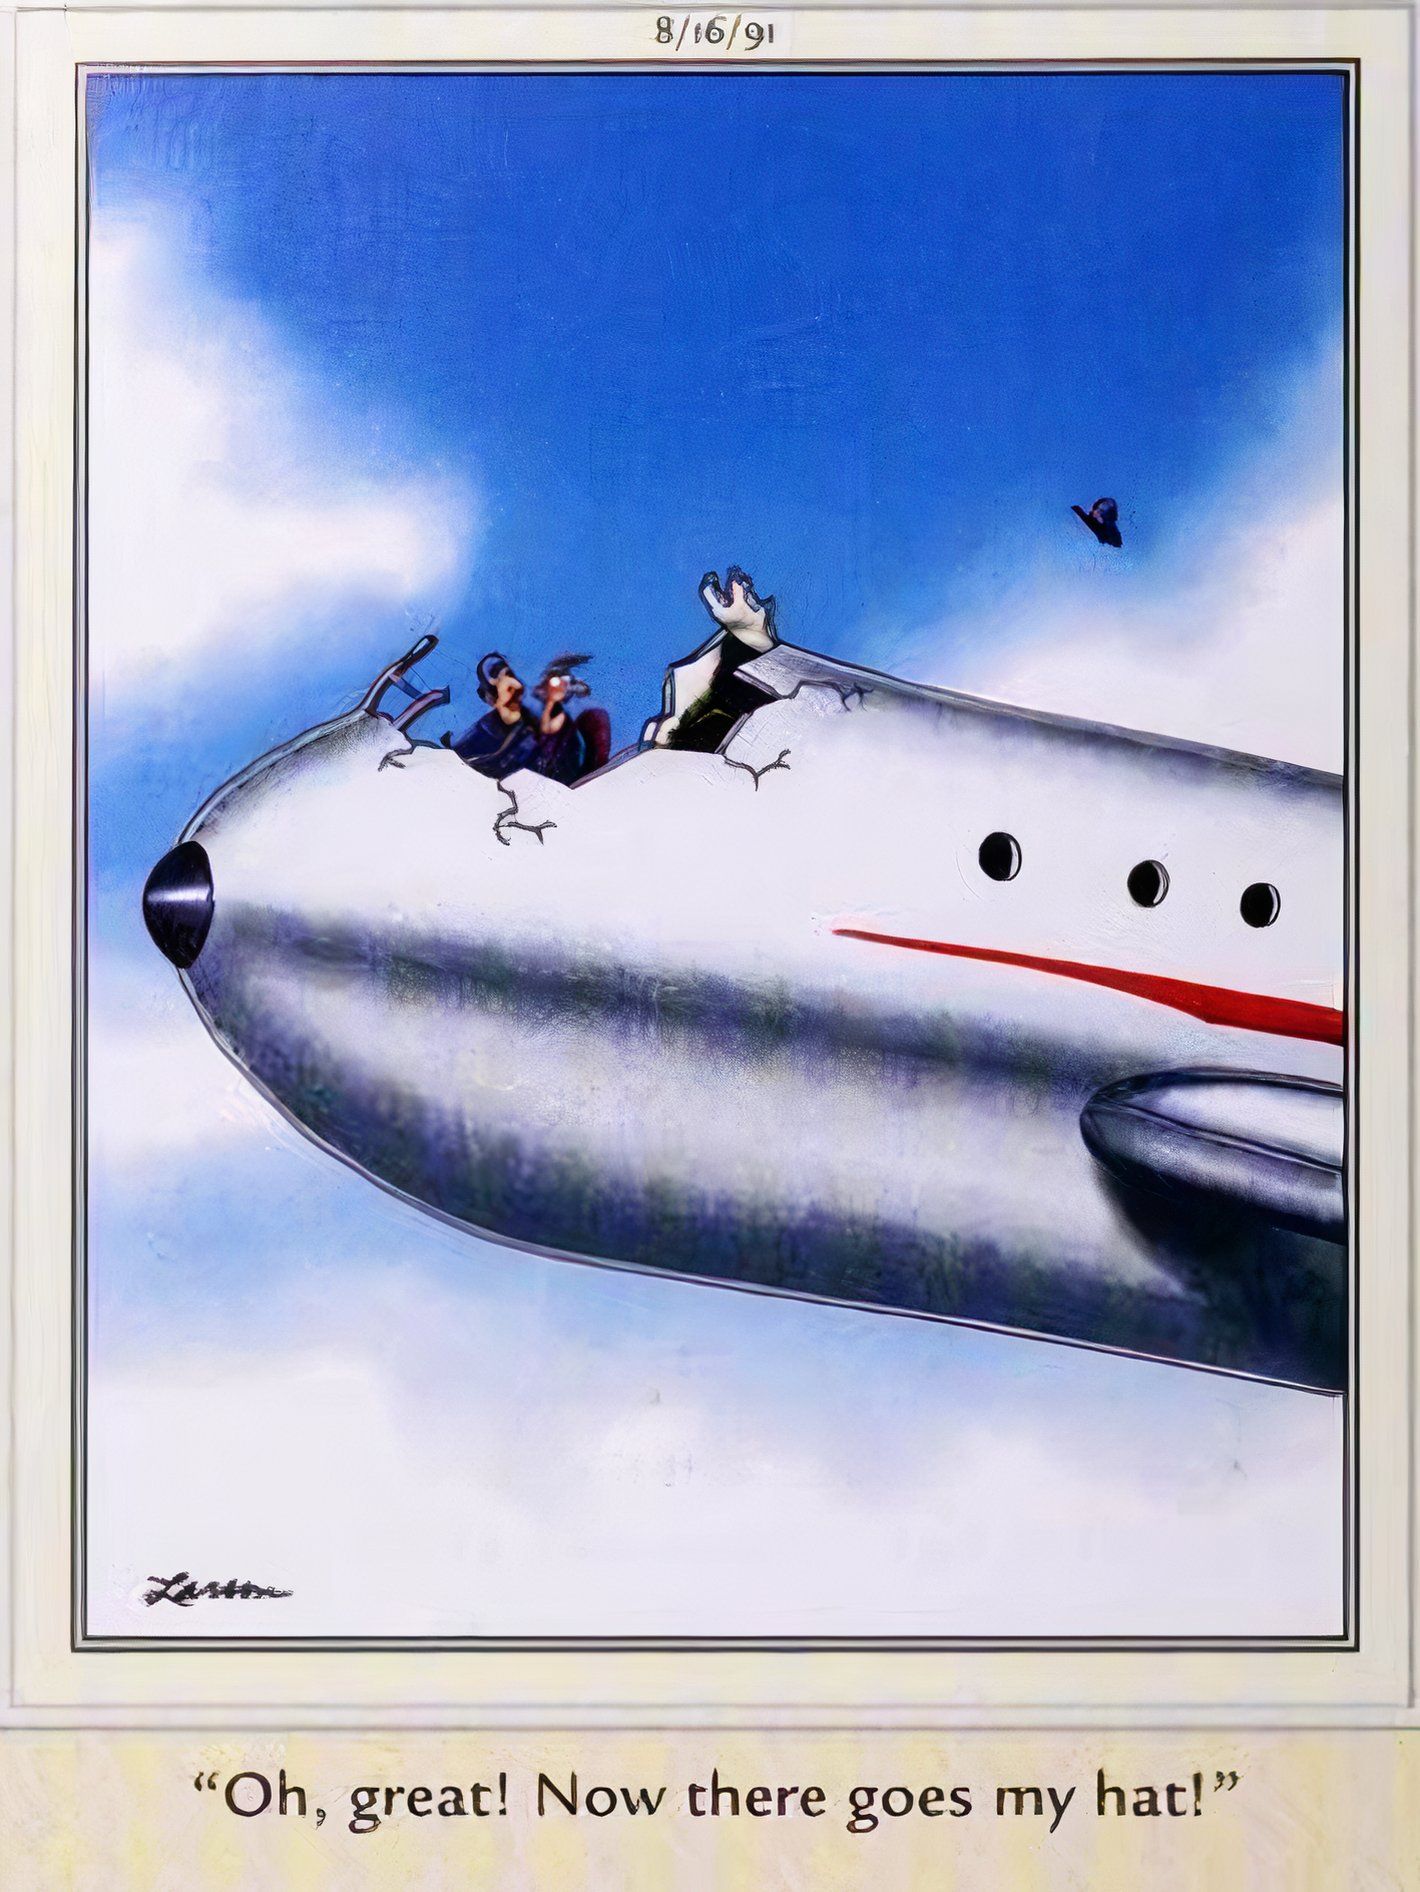 Far Side, 16 de agosto de 1991, a cabine de um avião está comprometida, mas o piloto só está preocupado em perder o chapéu